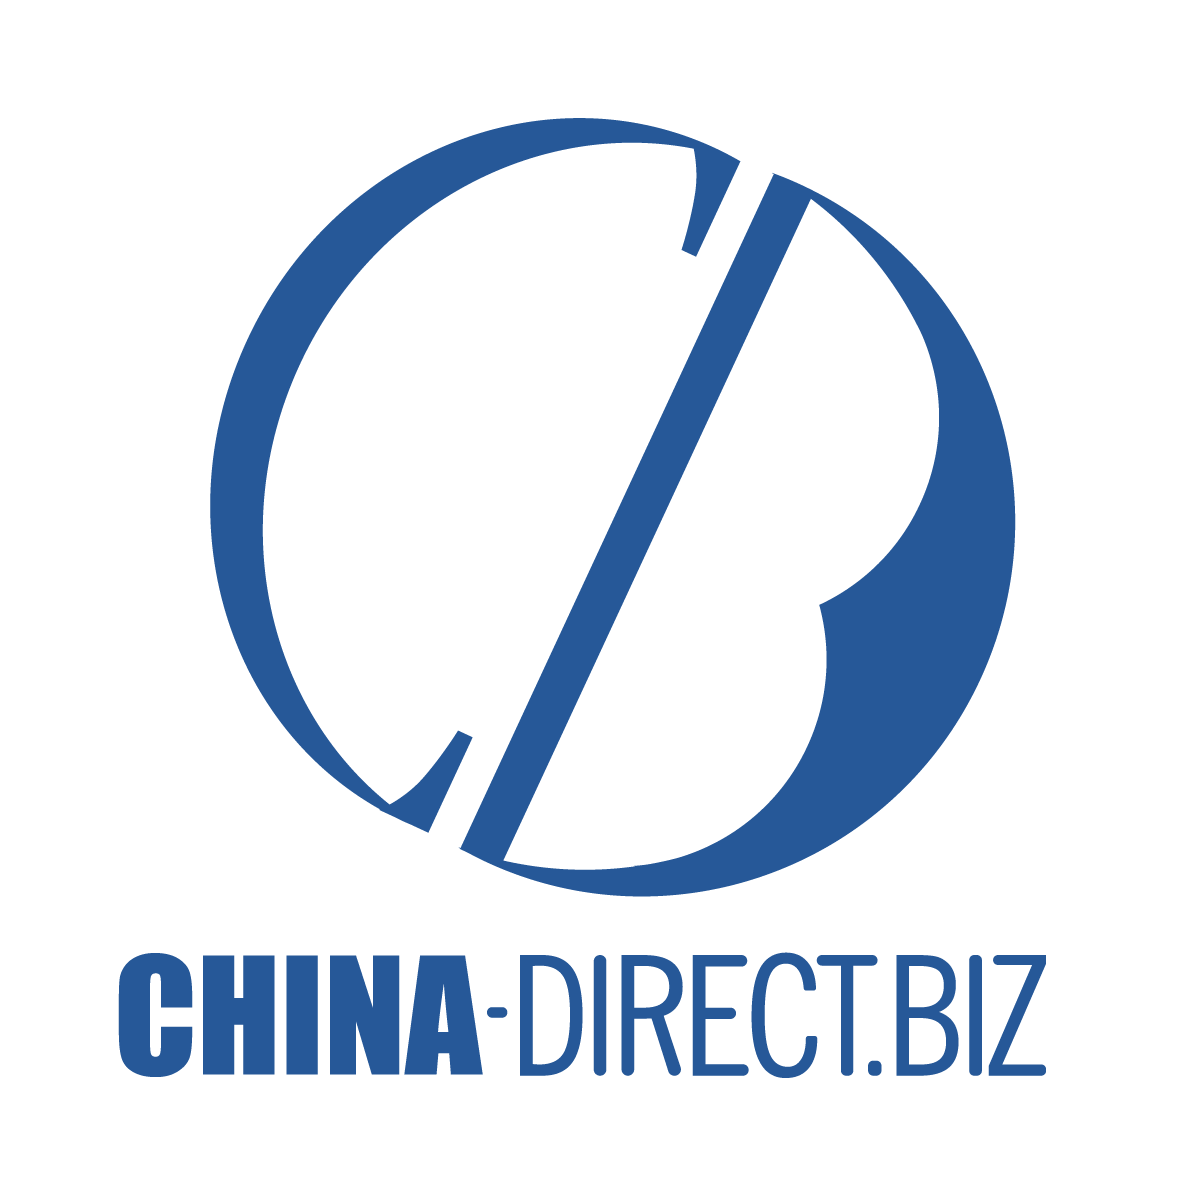 CHINA-DIRECT.BIZ